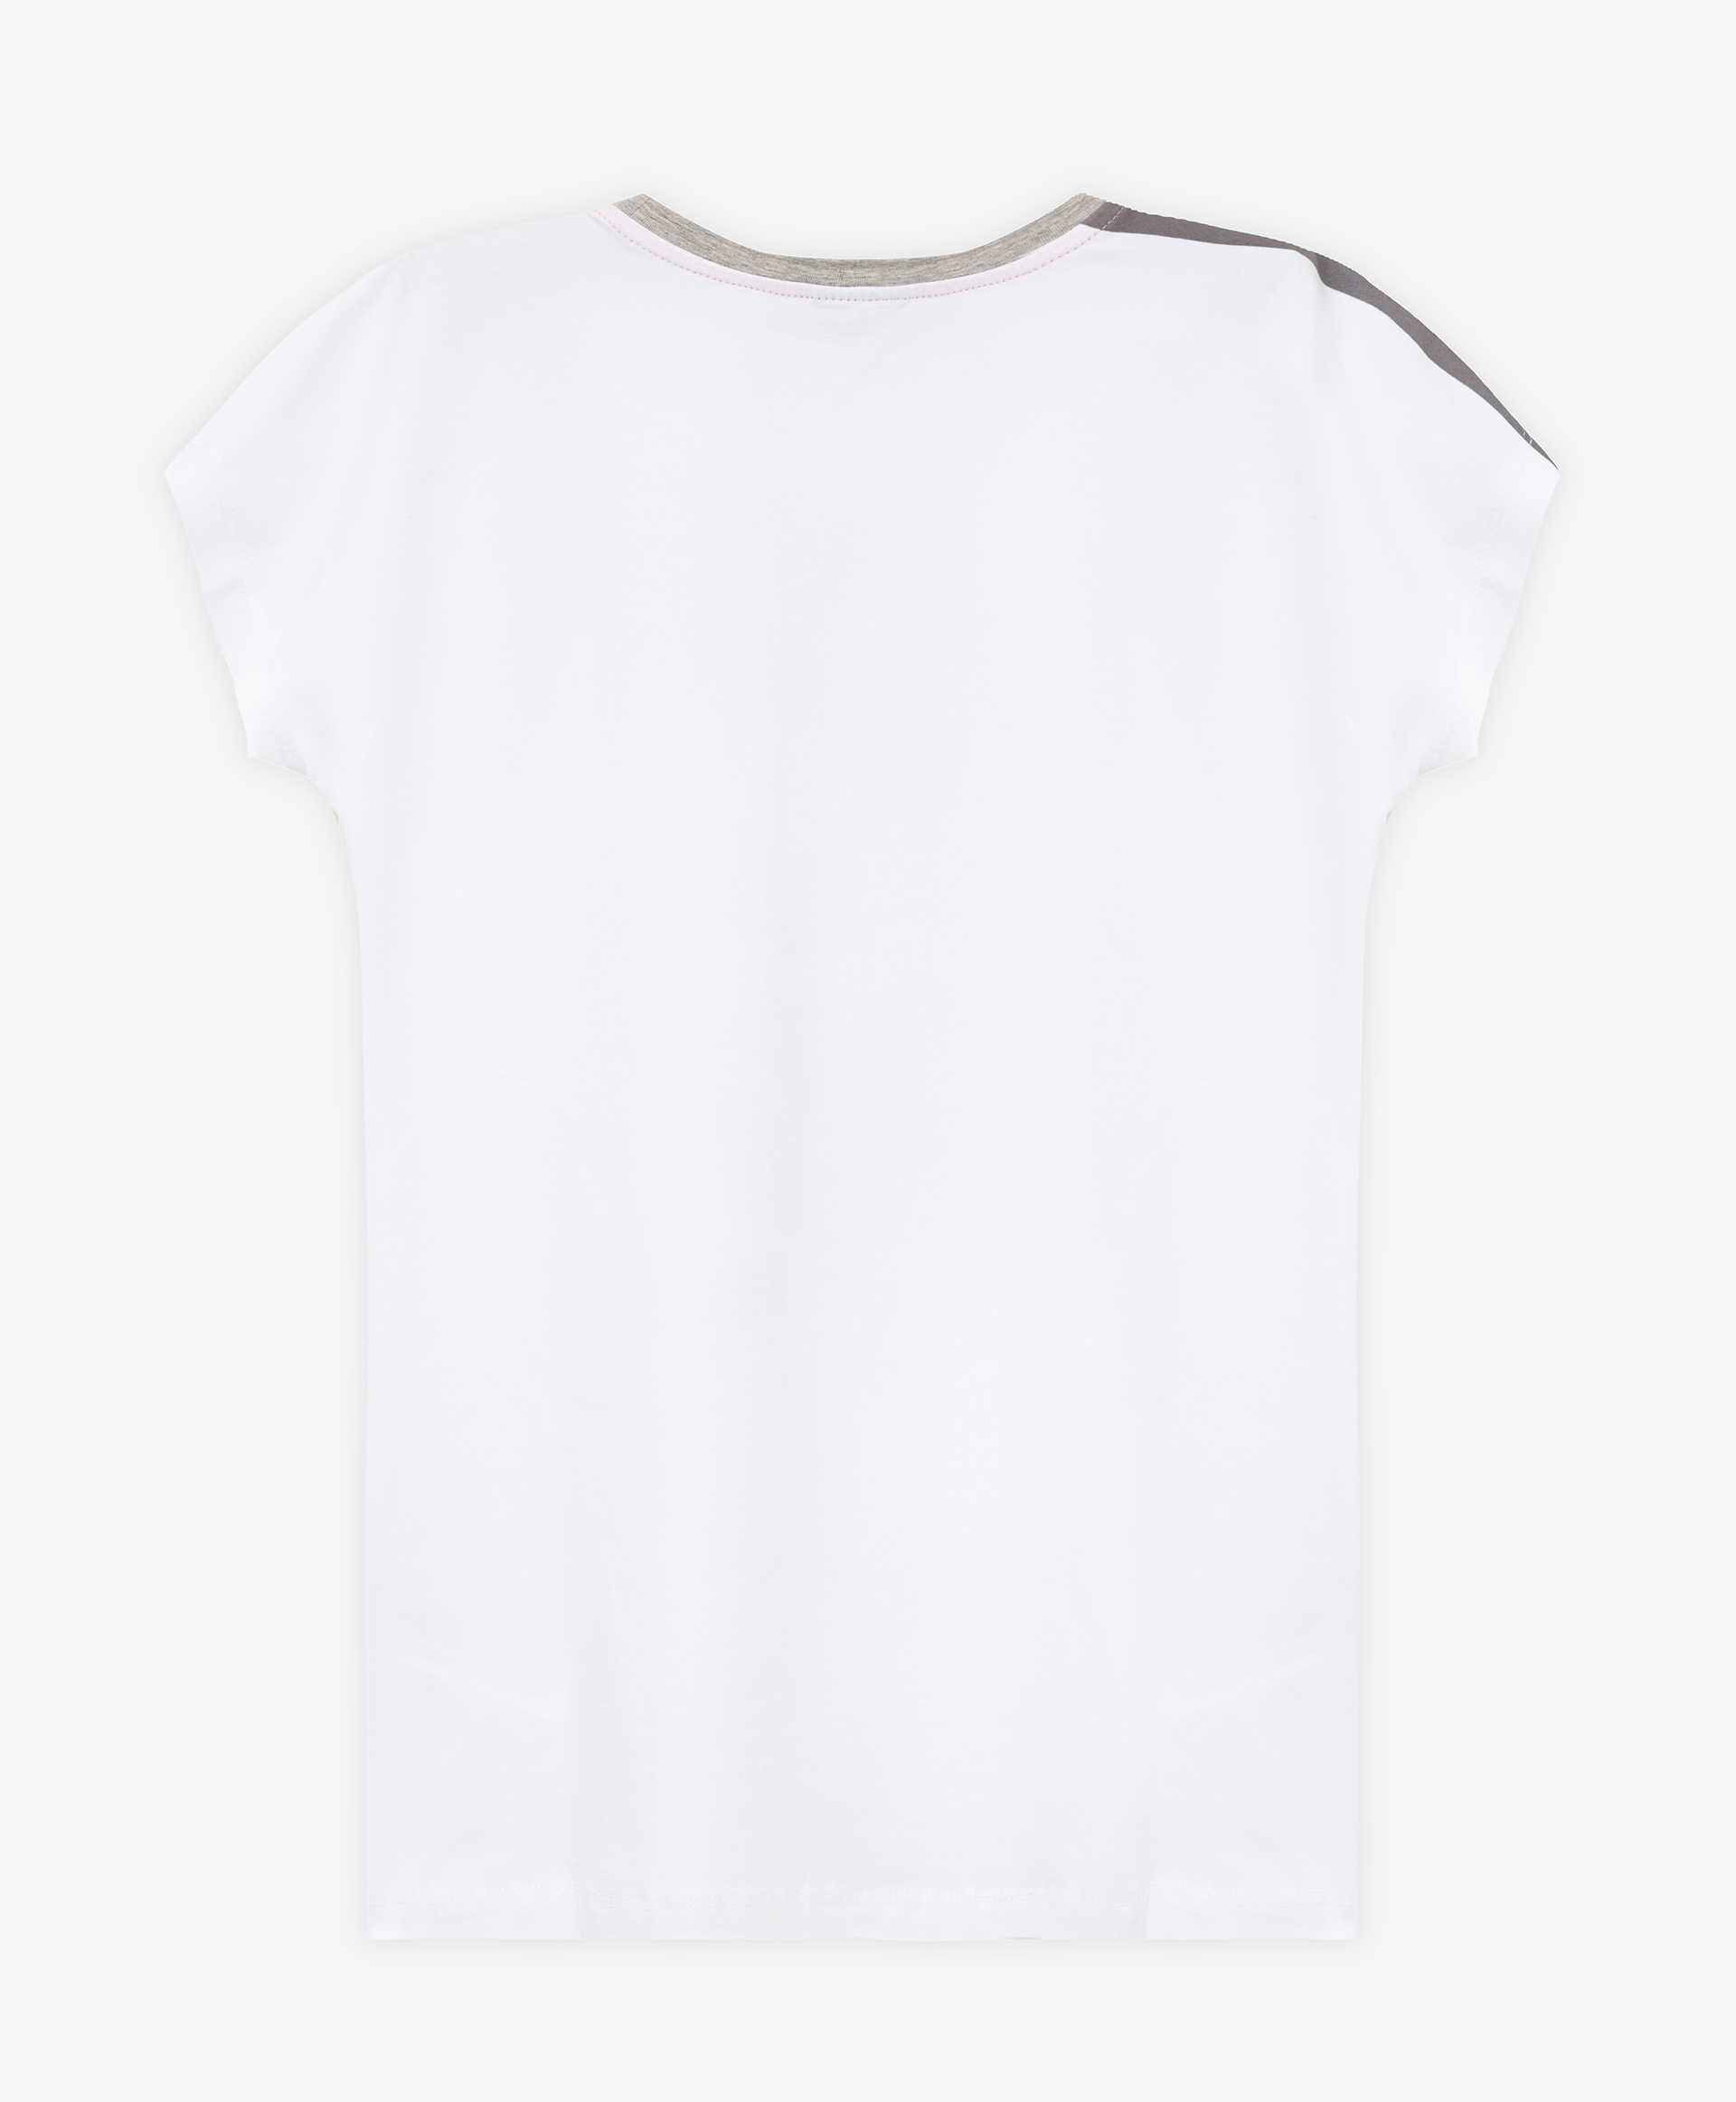 Ночная сорочка с принтом Gulliver 22100GC9801, размер 134-140, цвет белый - фото 2